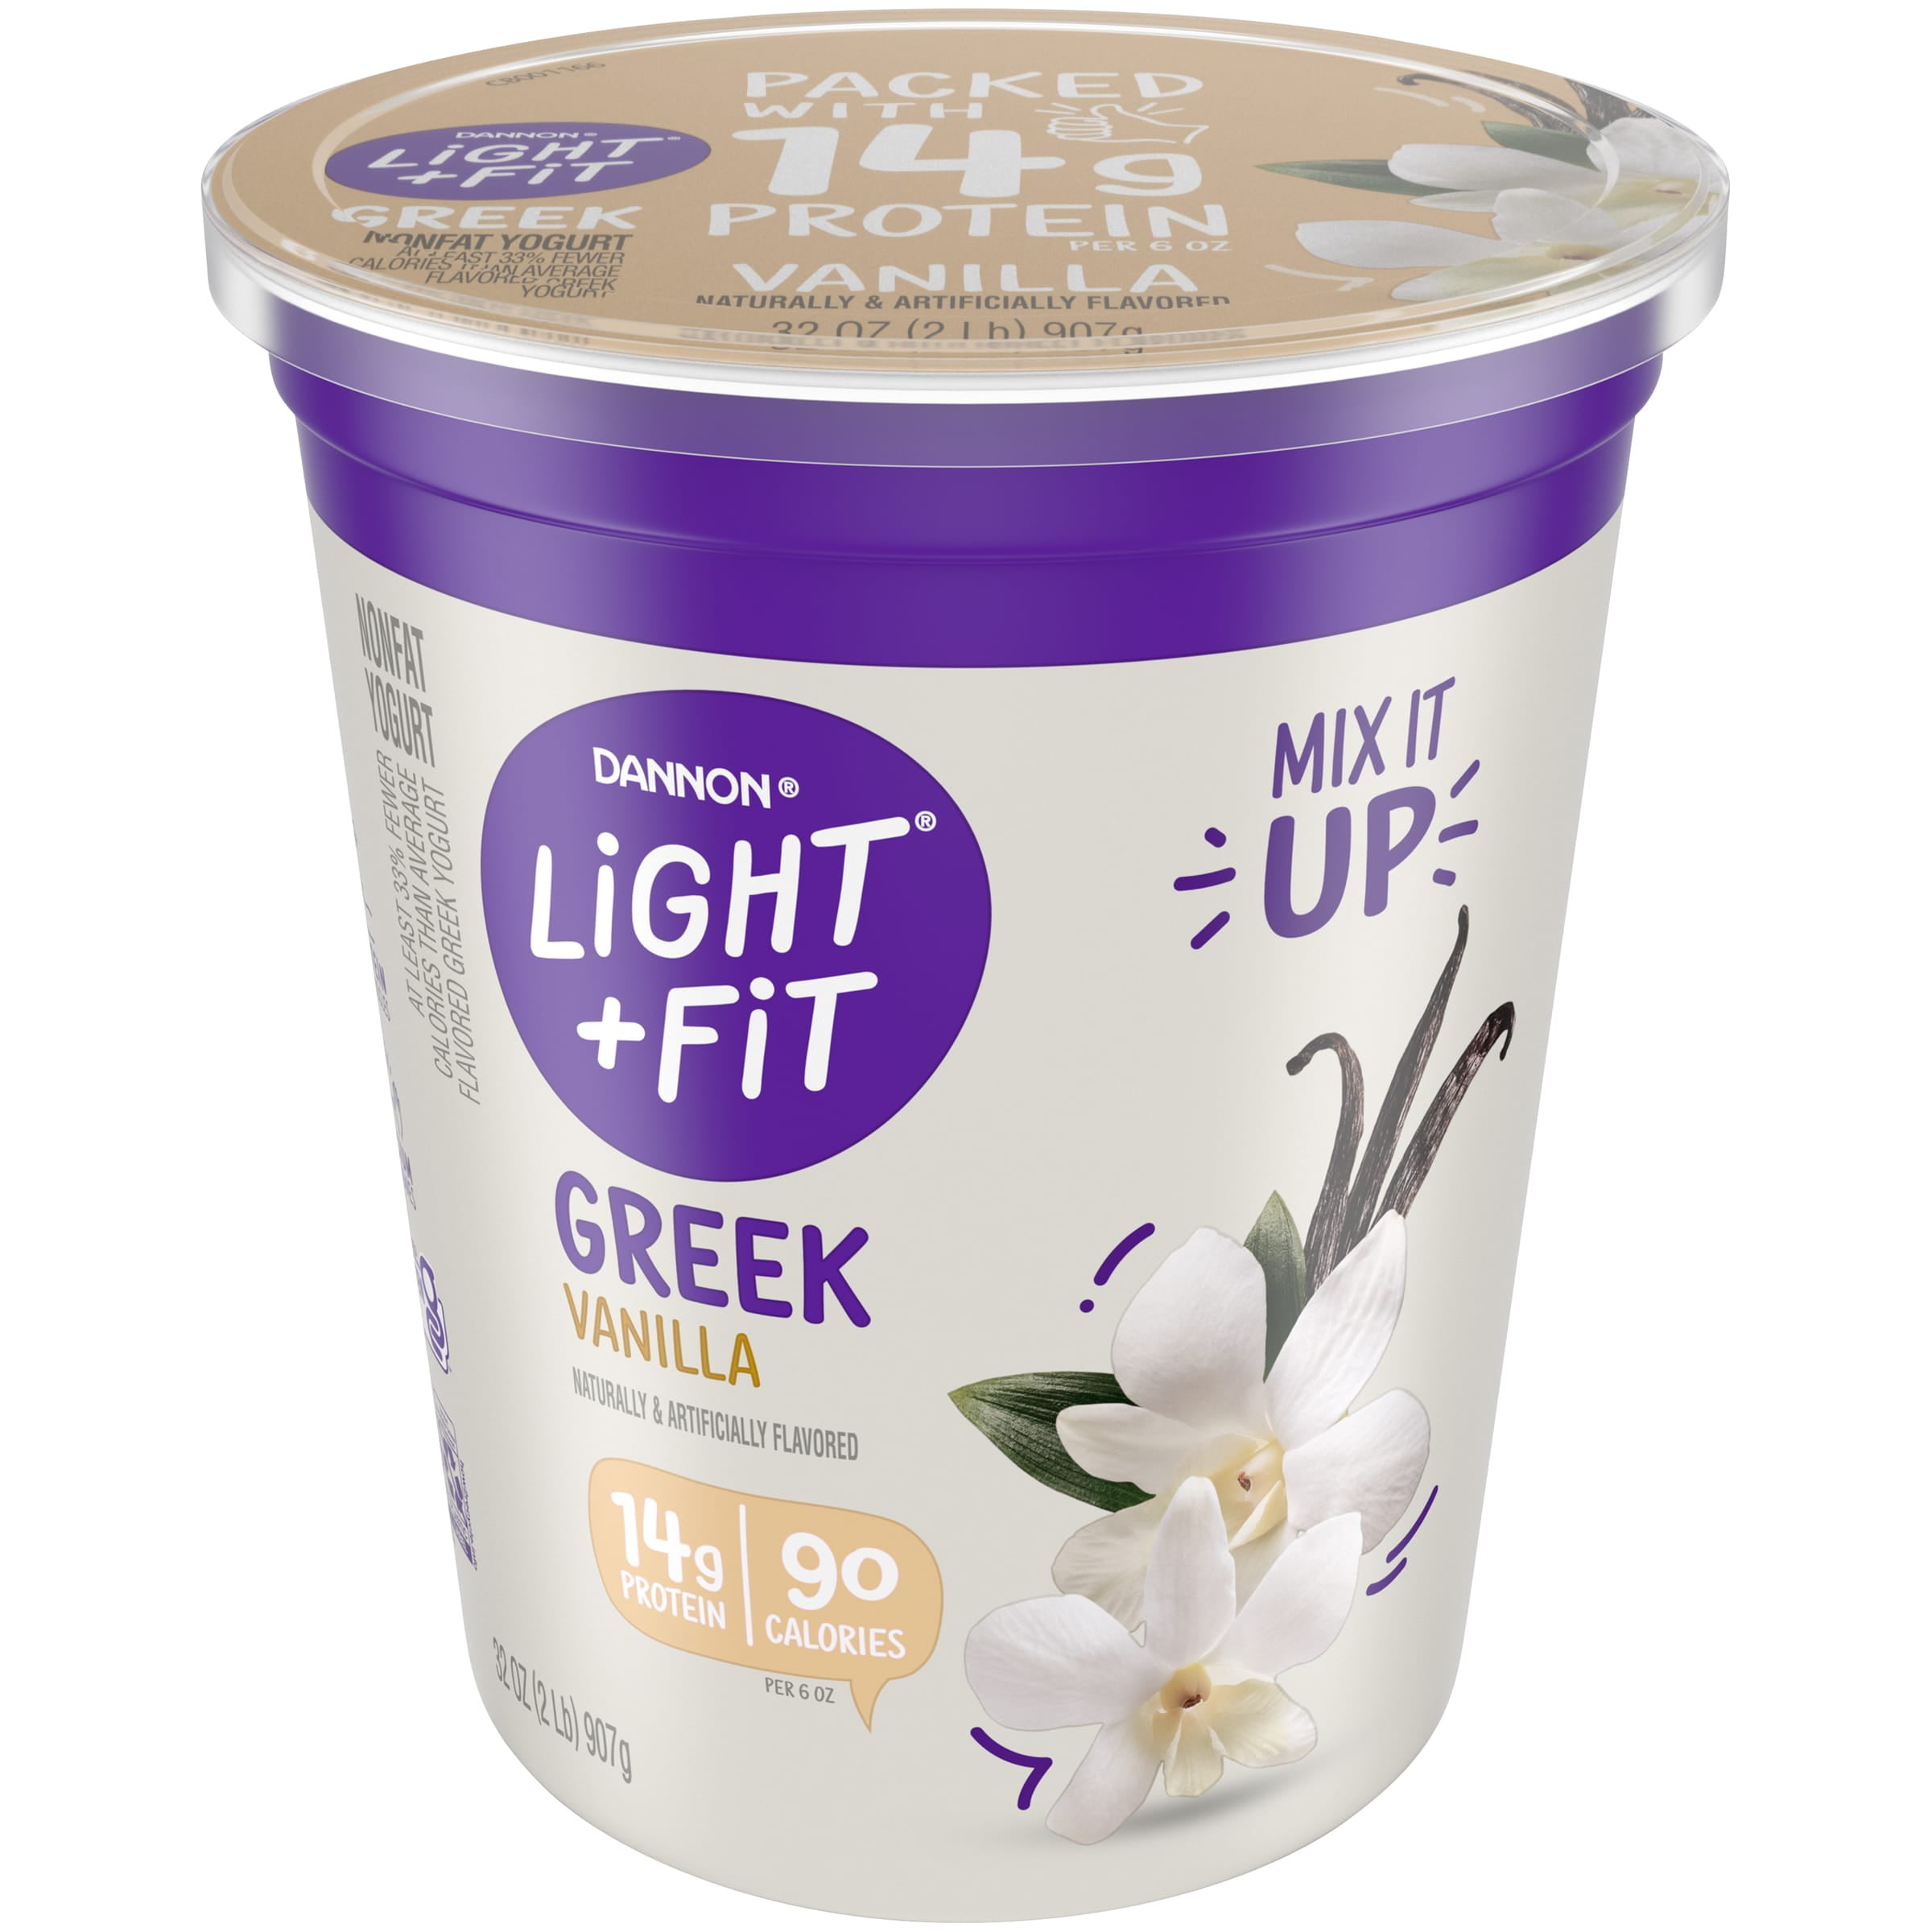 Light + Fit Nonfat Gluten-Free Vanilla Greek Yogurt, 32 Oz.